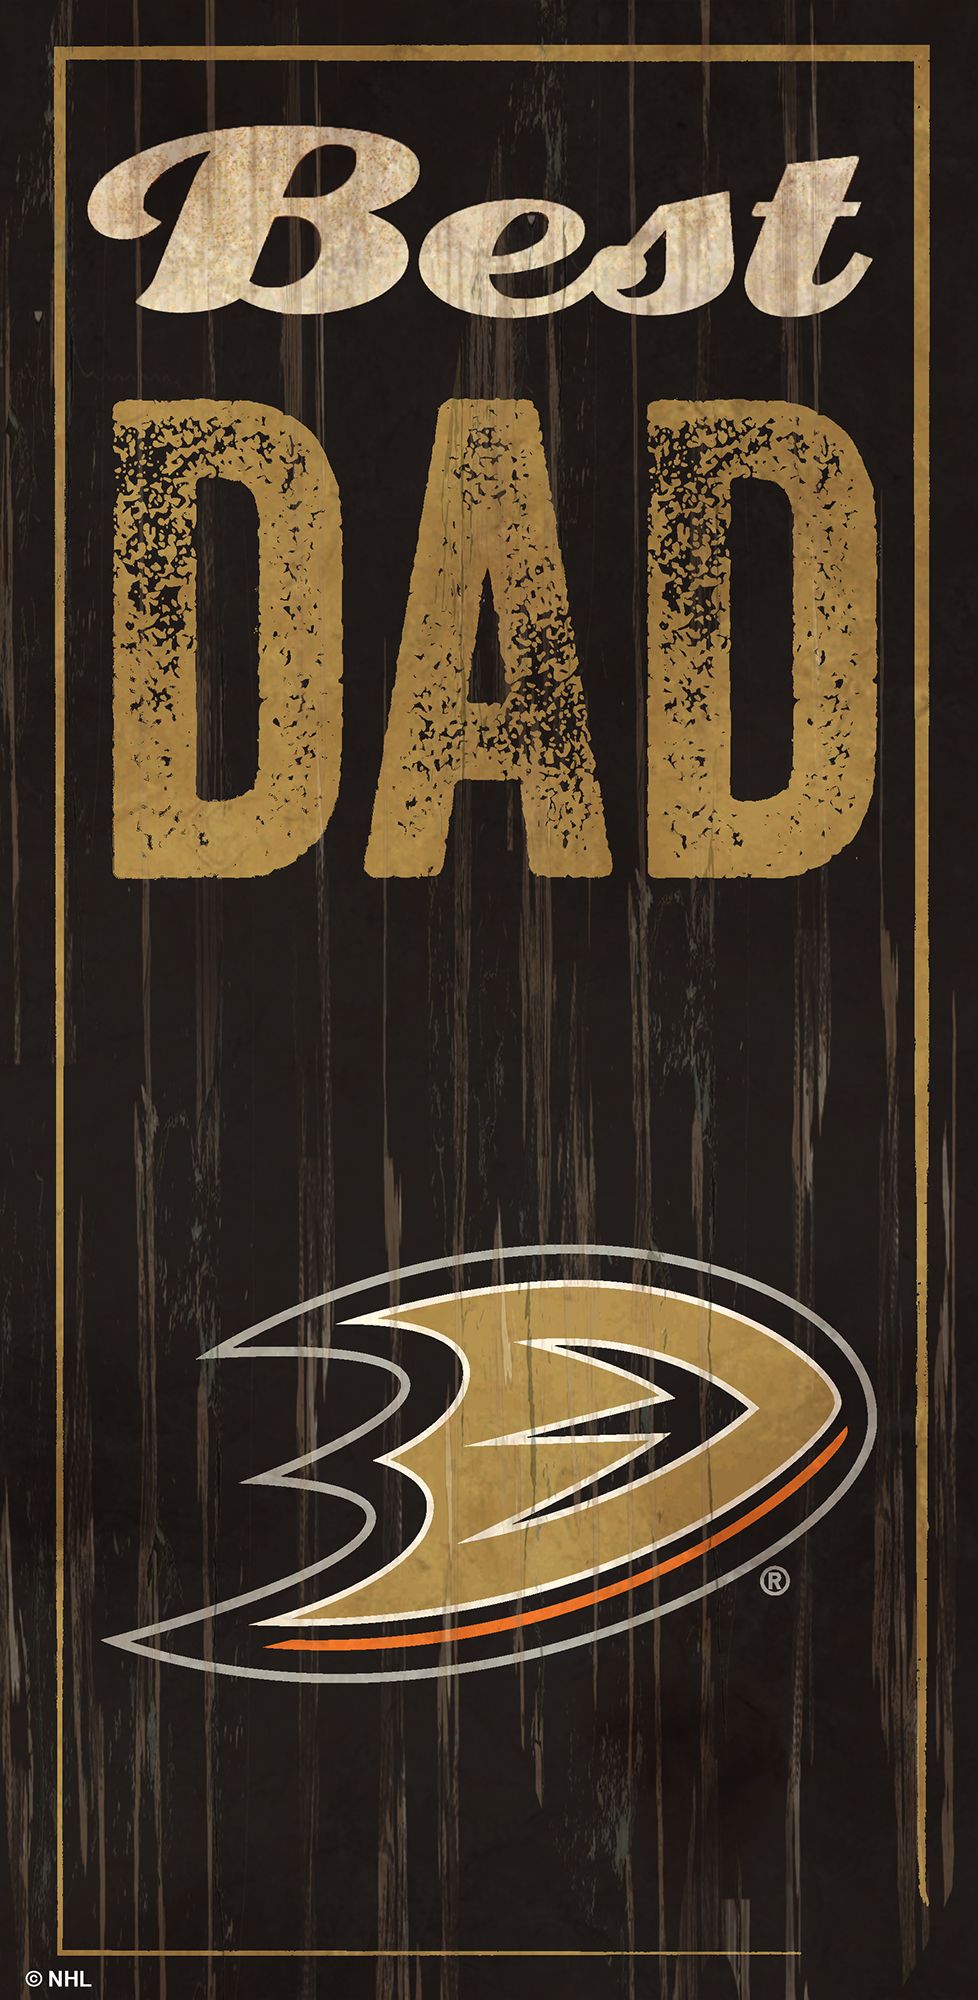 Anaheim Ducks Best Dad Sign by Fan Creations